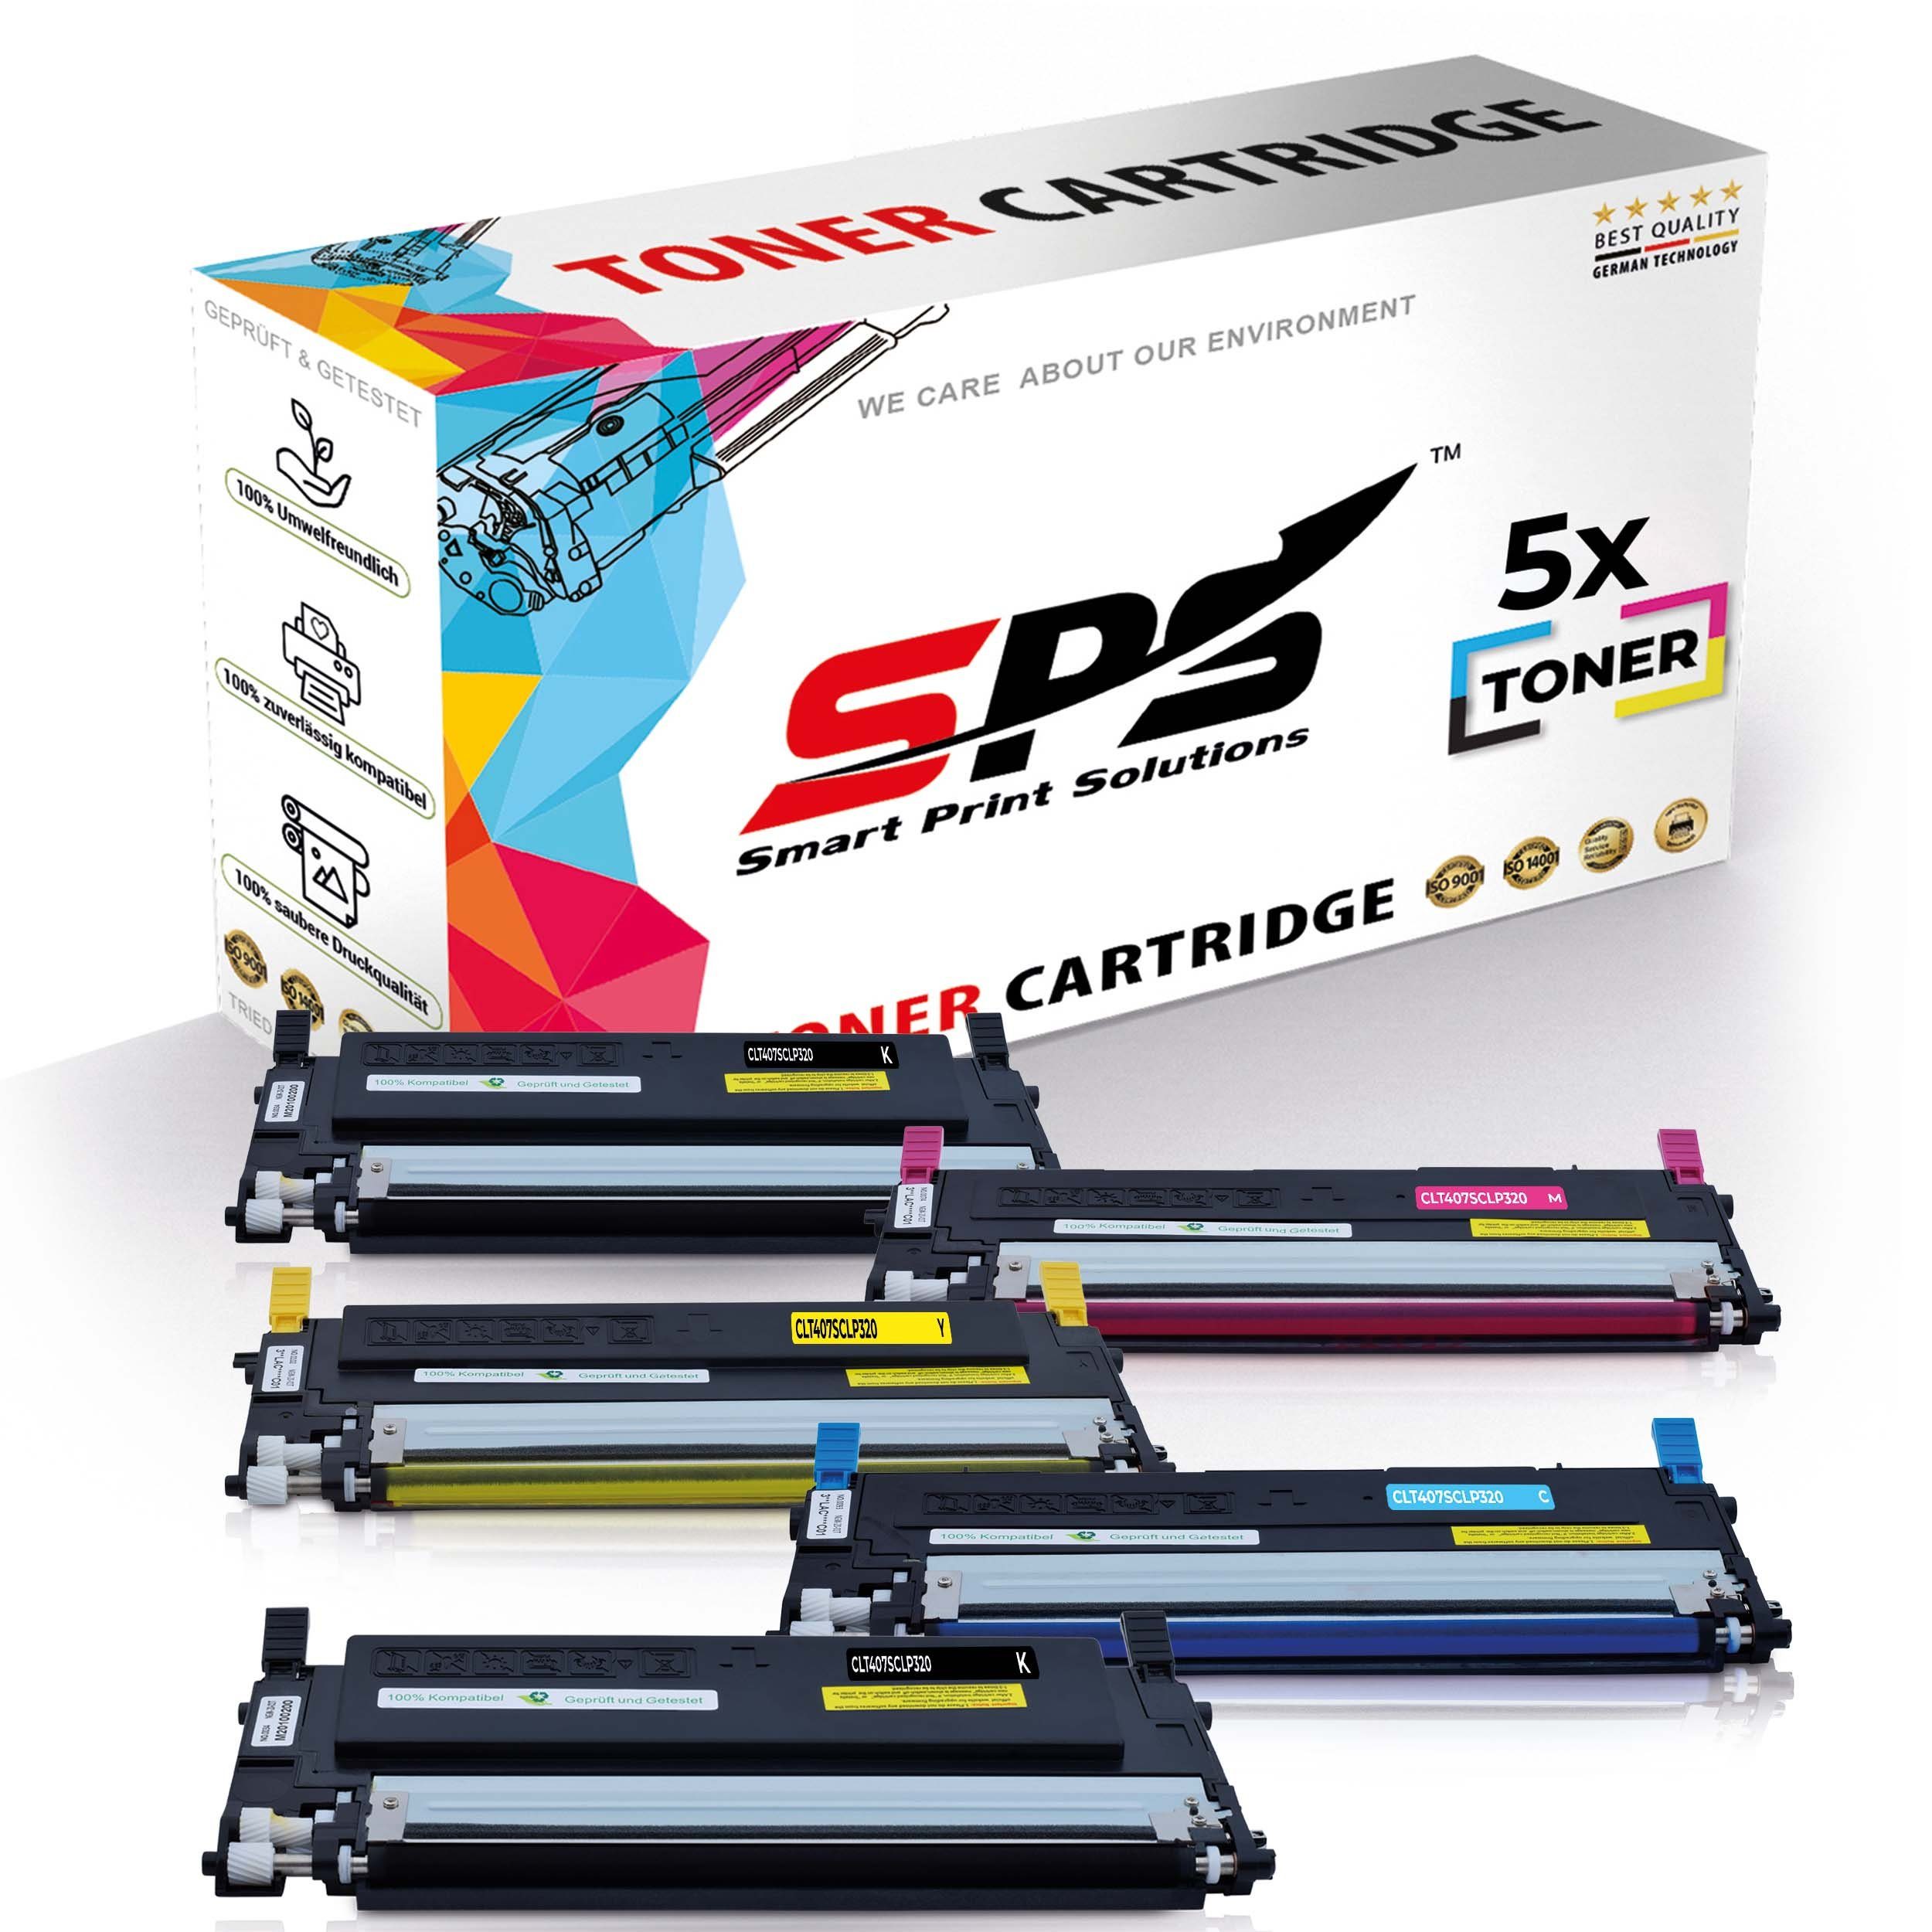 SPS Tonerkartusche Kompatibel für Samsung CLP-320 C407 CLT-C407S, (5er Pack)